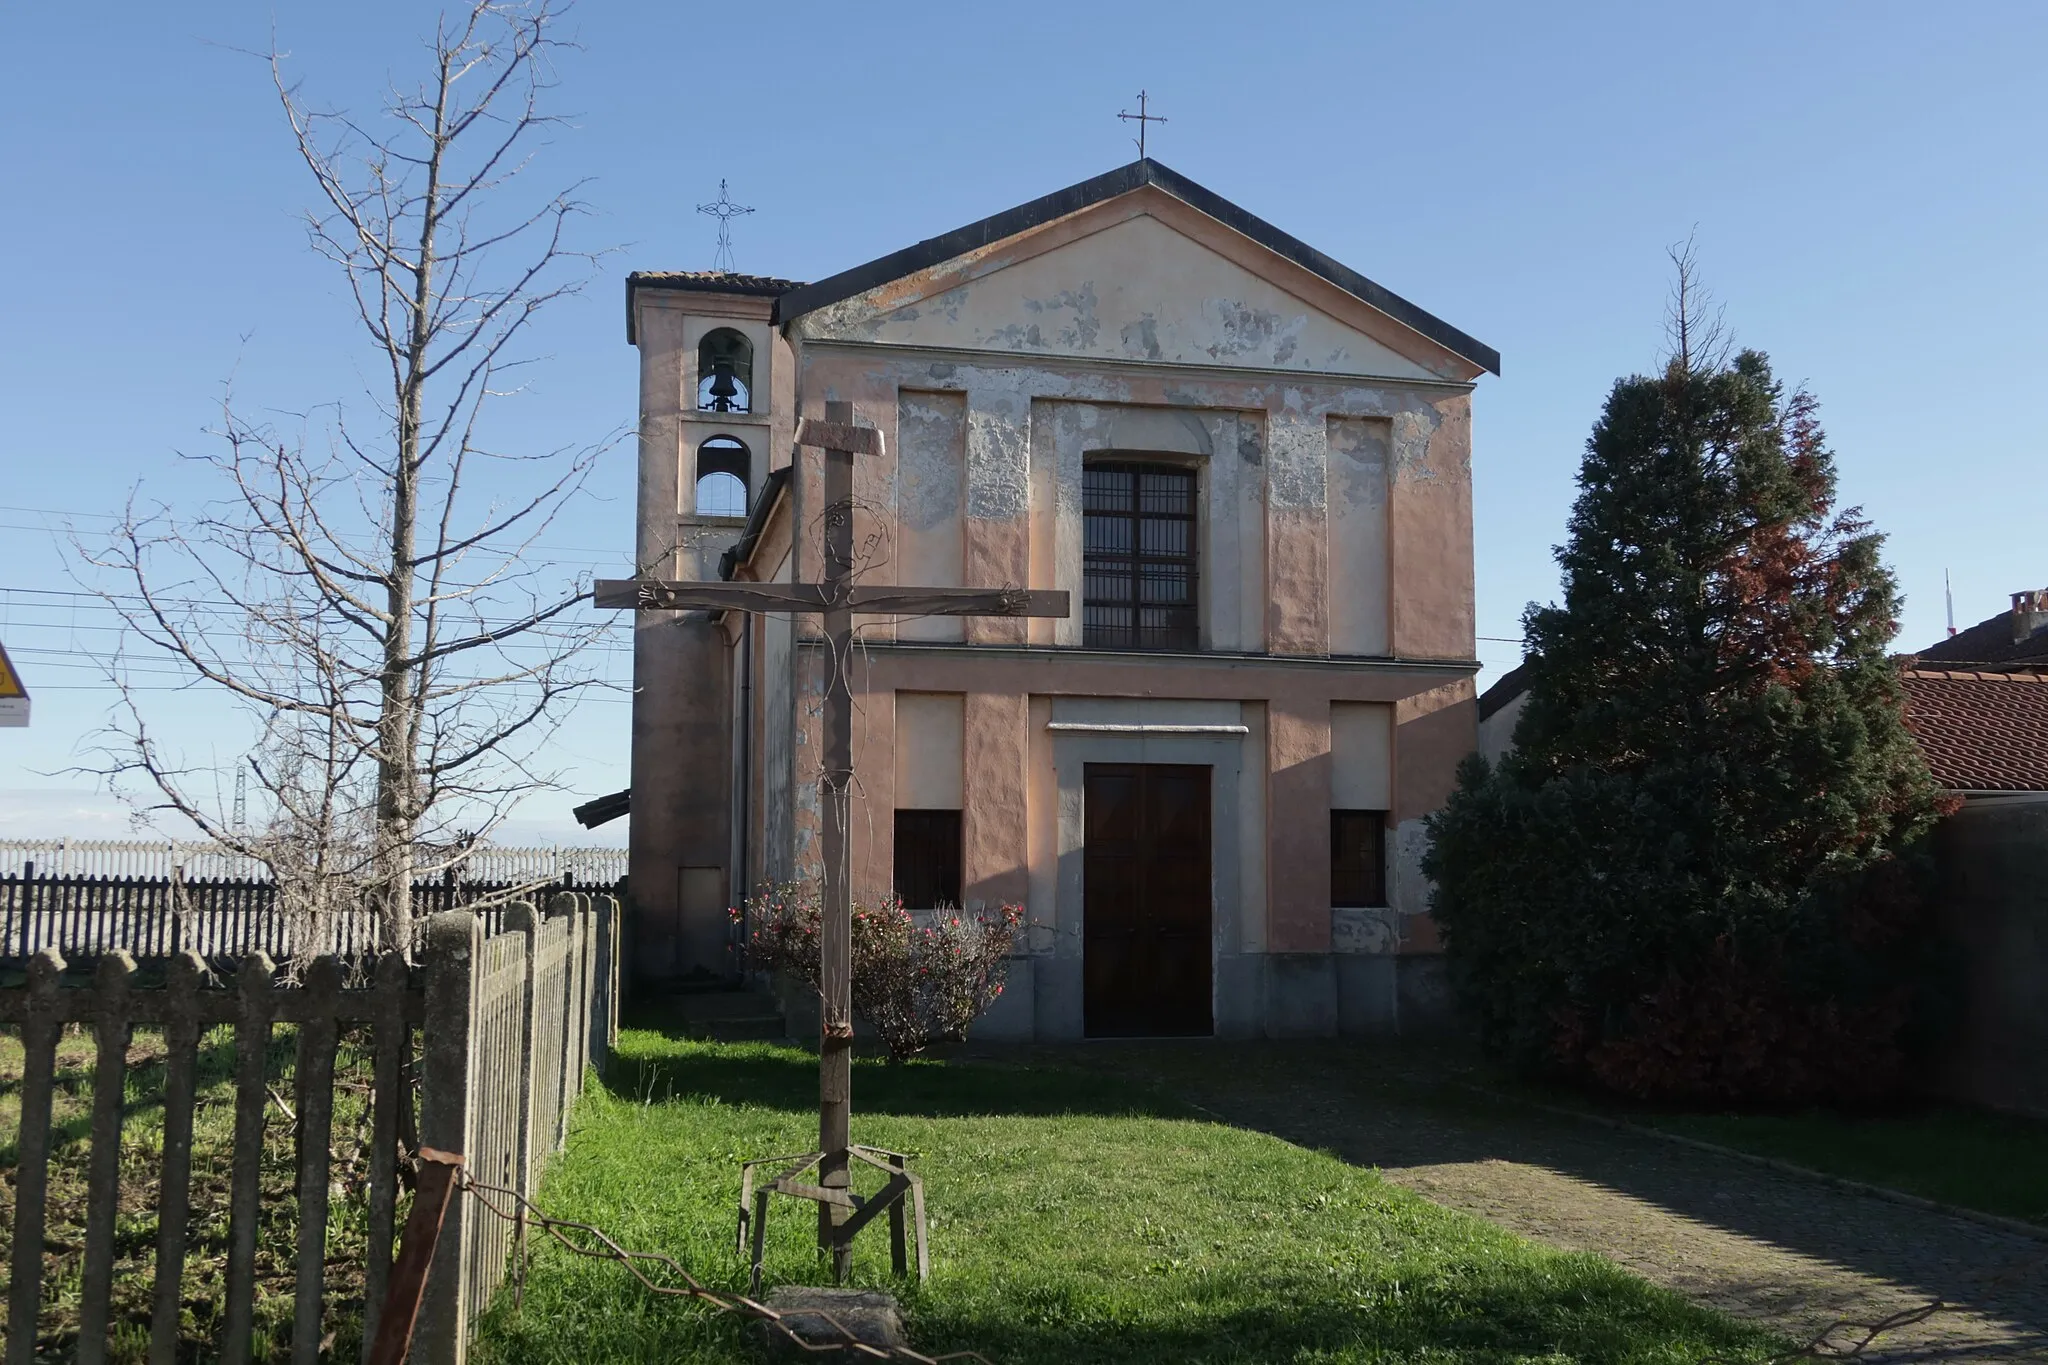 Photo showing: Caltignaga Chiesa di Sant'Antonio errata; corretta Sant'Abramo